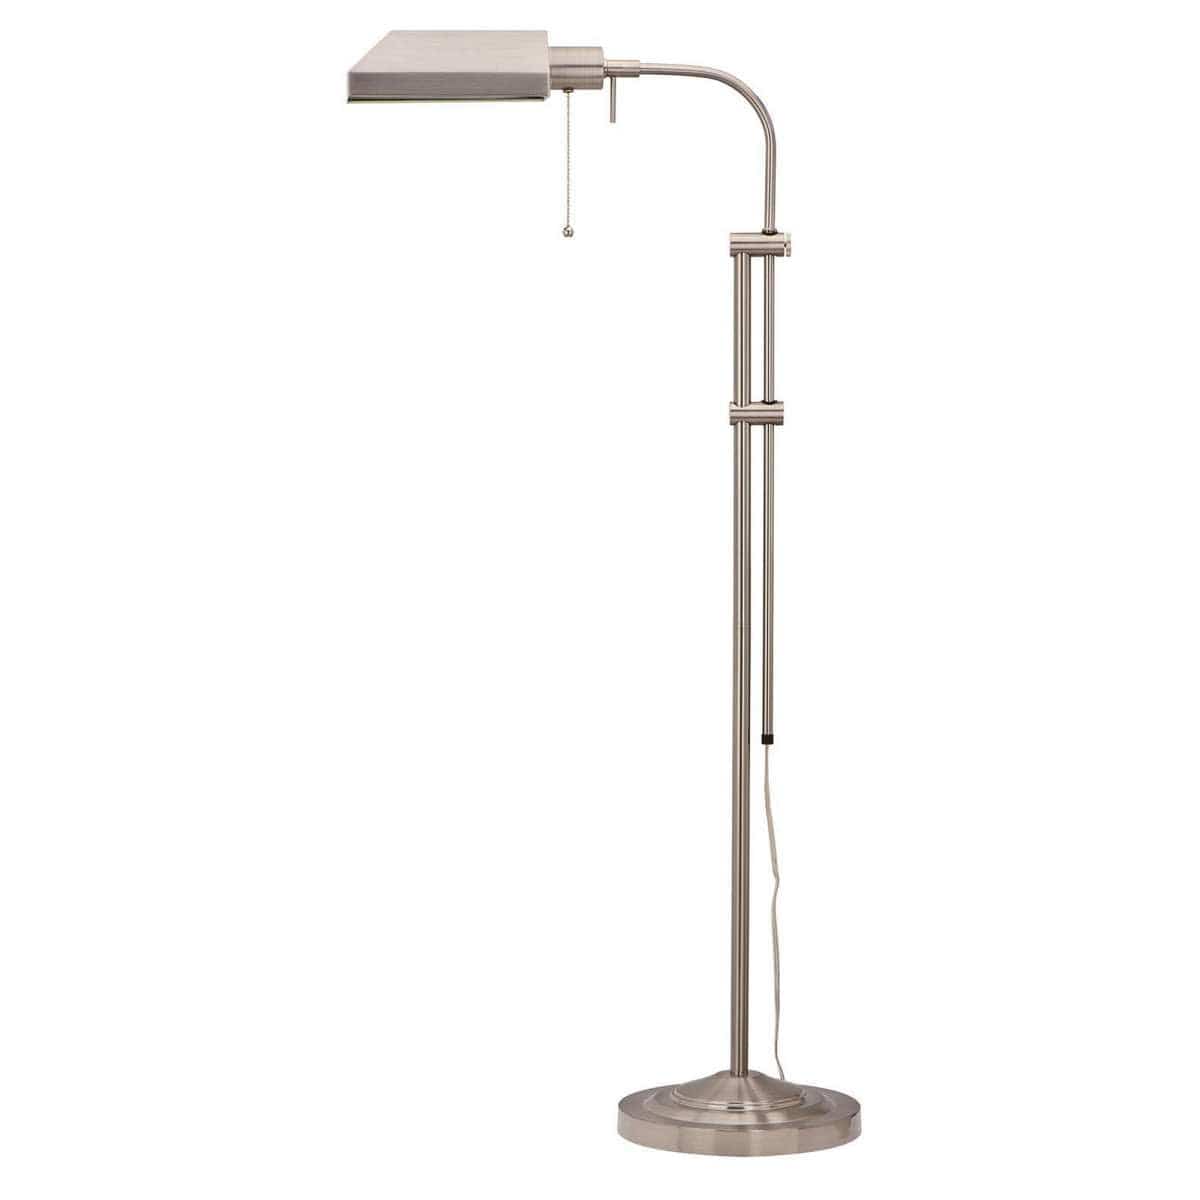 Benzara Metal Rectangular Floor Lamp With Adjustable Pole, White By Benzara Floor Lamps BM225080